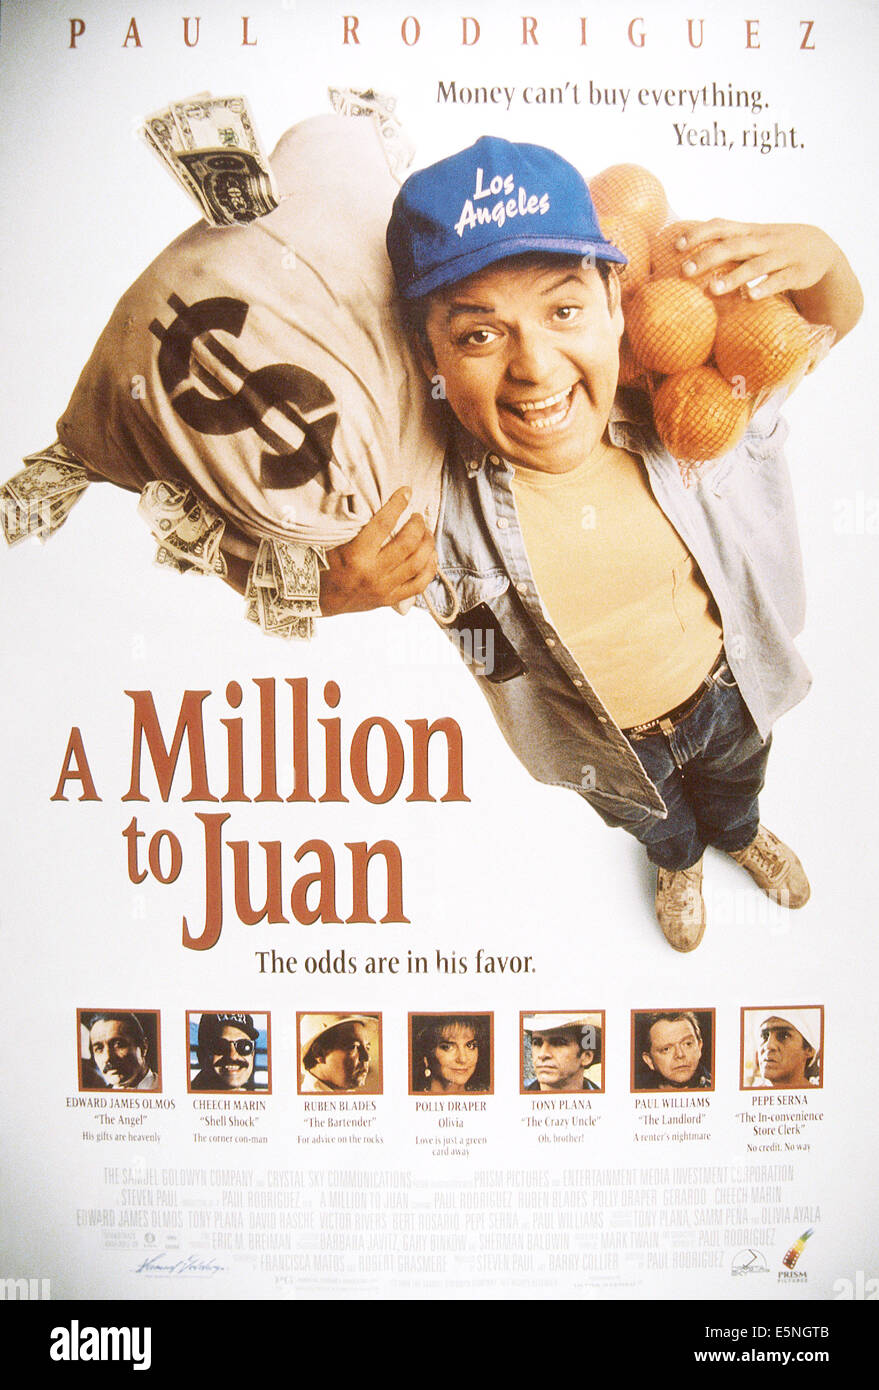 Un milione di JUAN, Paul Rodriguez (top), in basso da sinistra: Edward James Olmos, Cheech Marin, Ruben Blades, Polly Draper, Tony Foto Stock